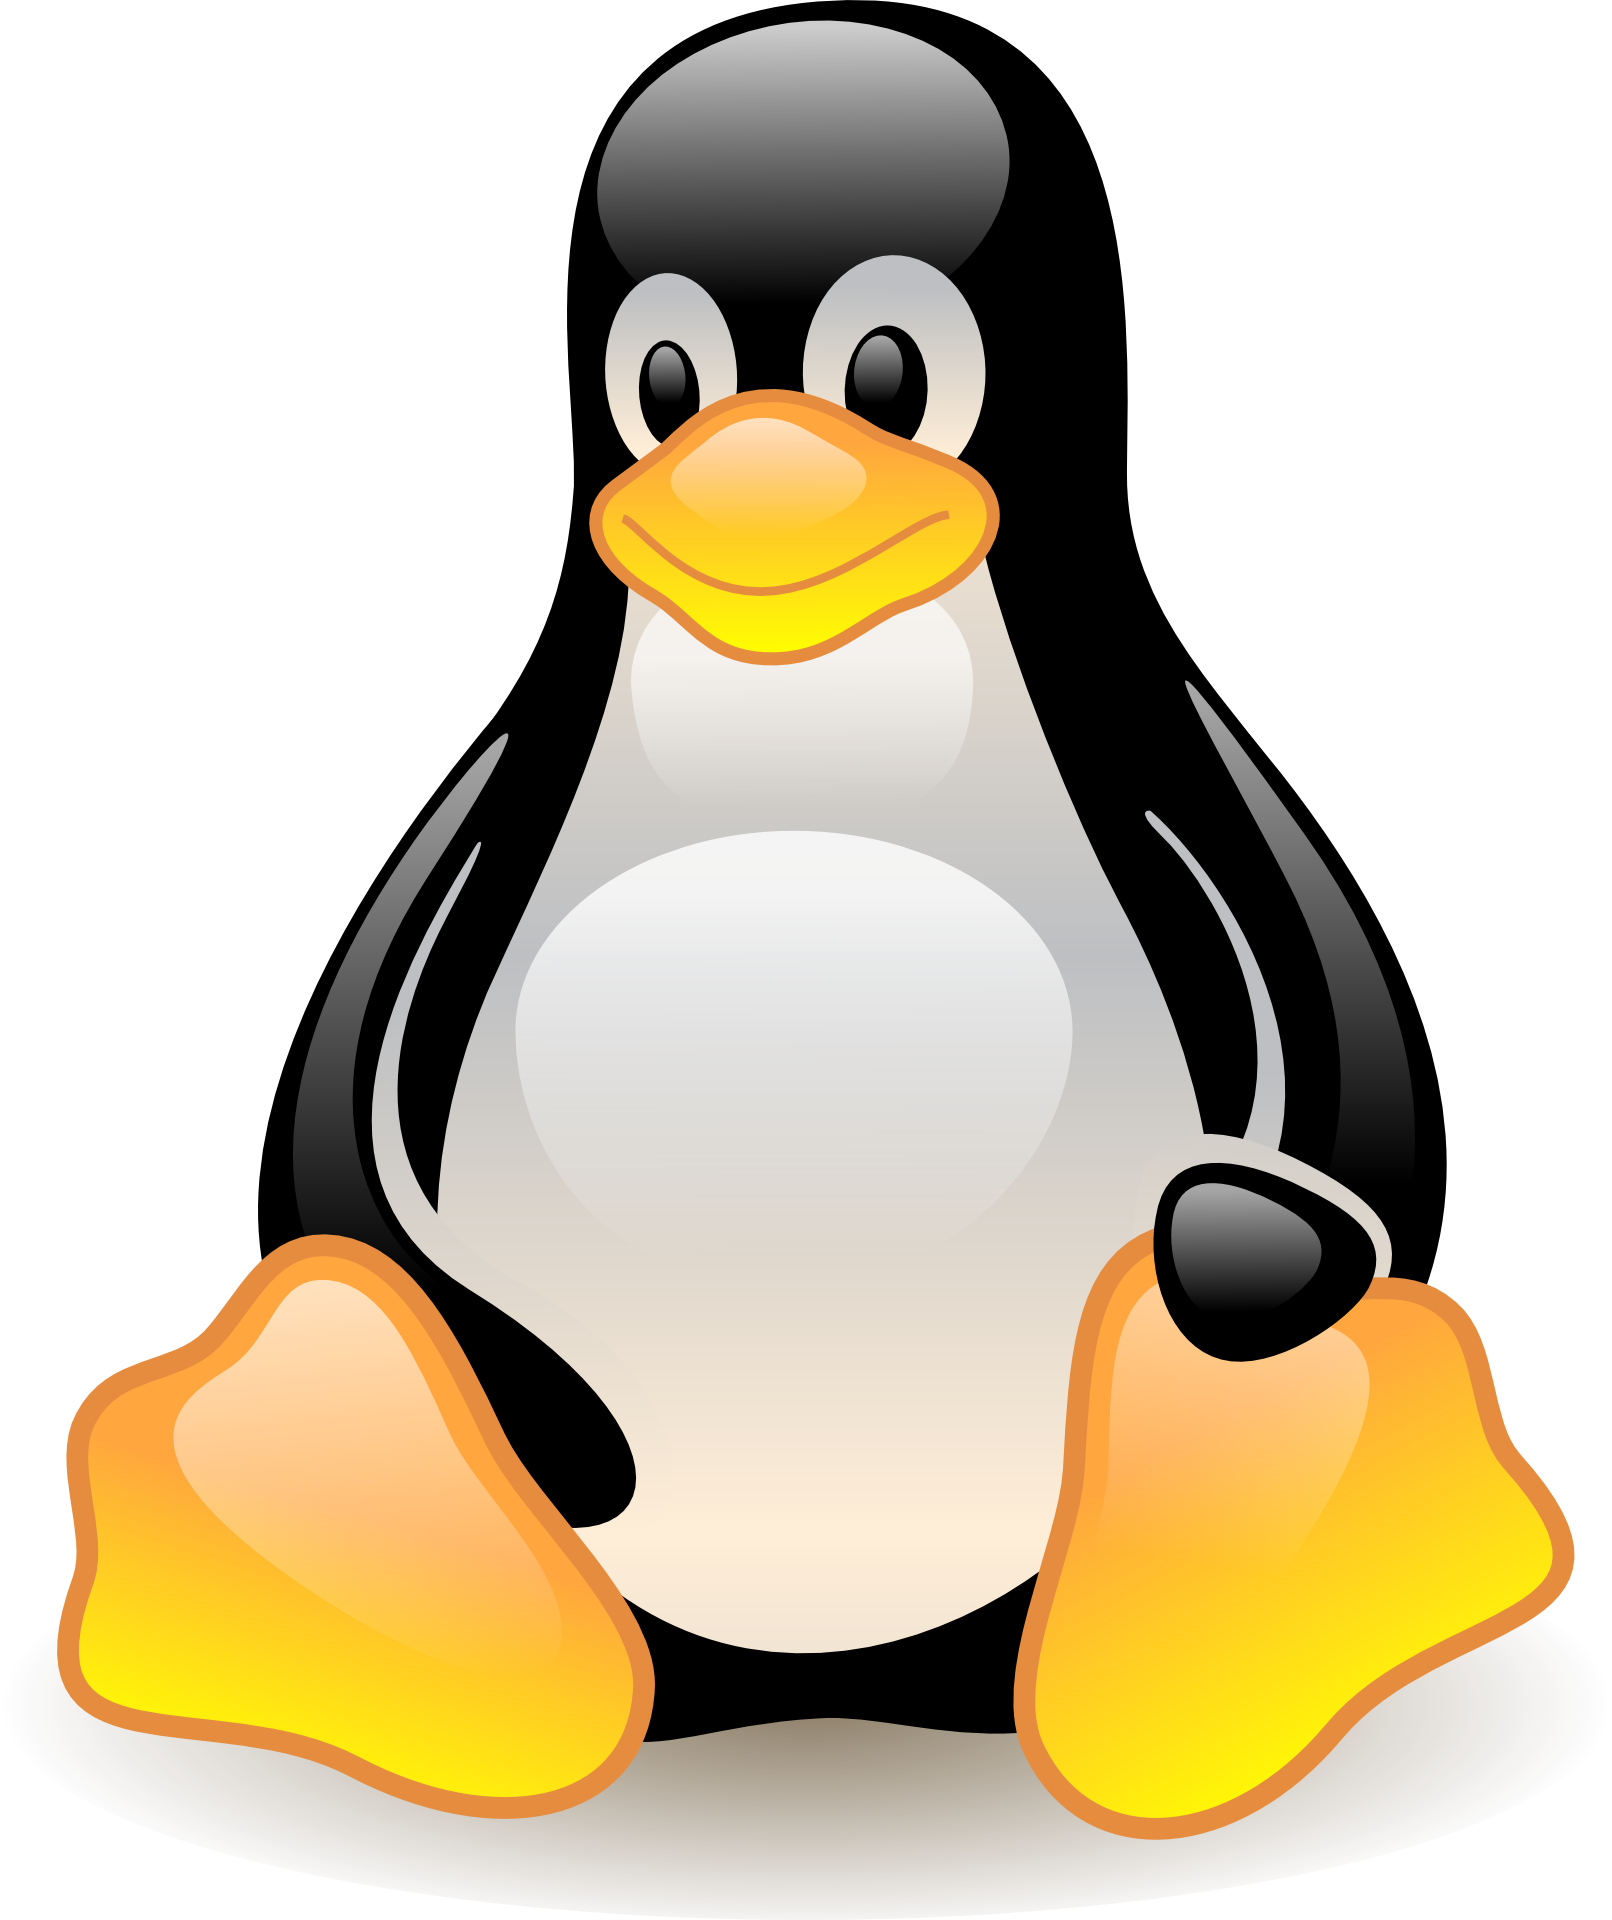 Por que usar Linux?